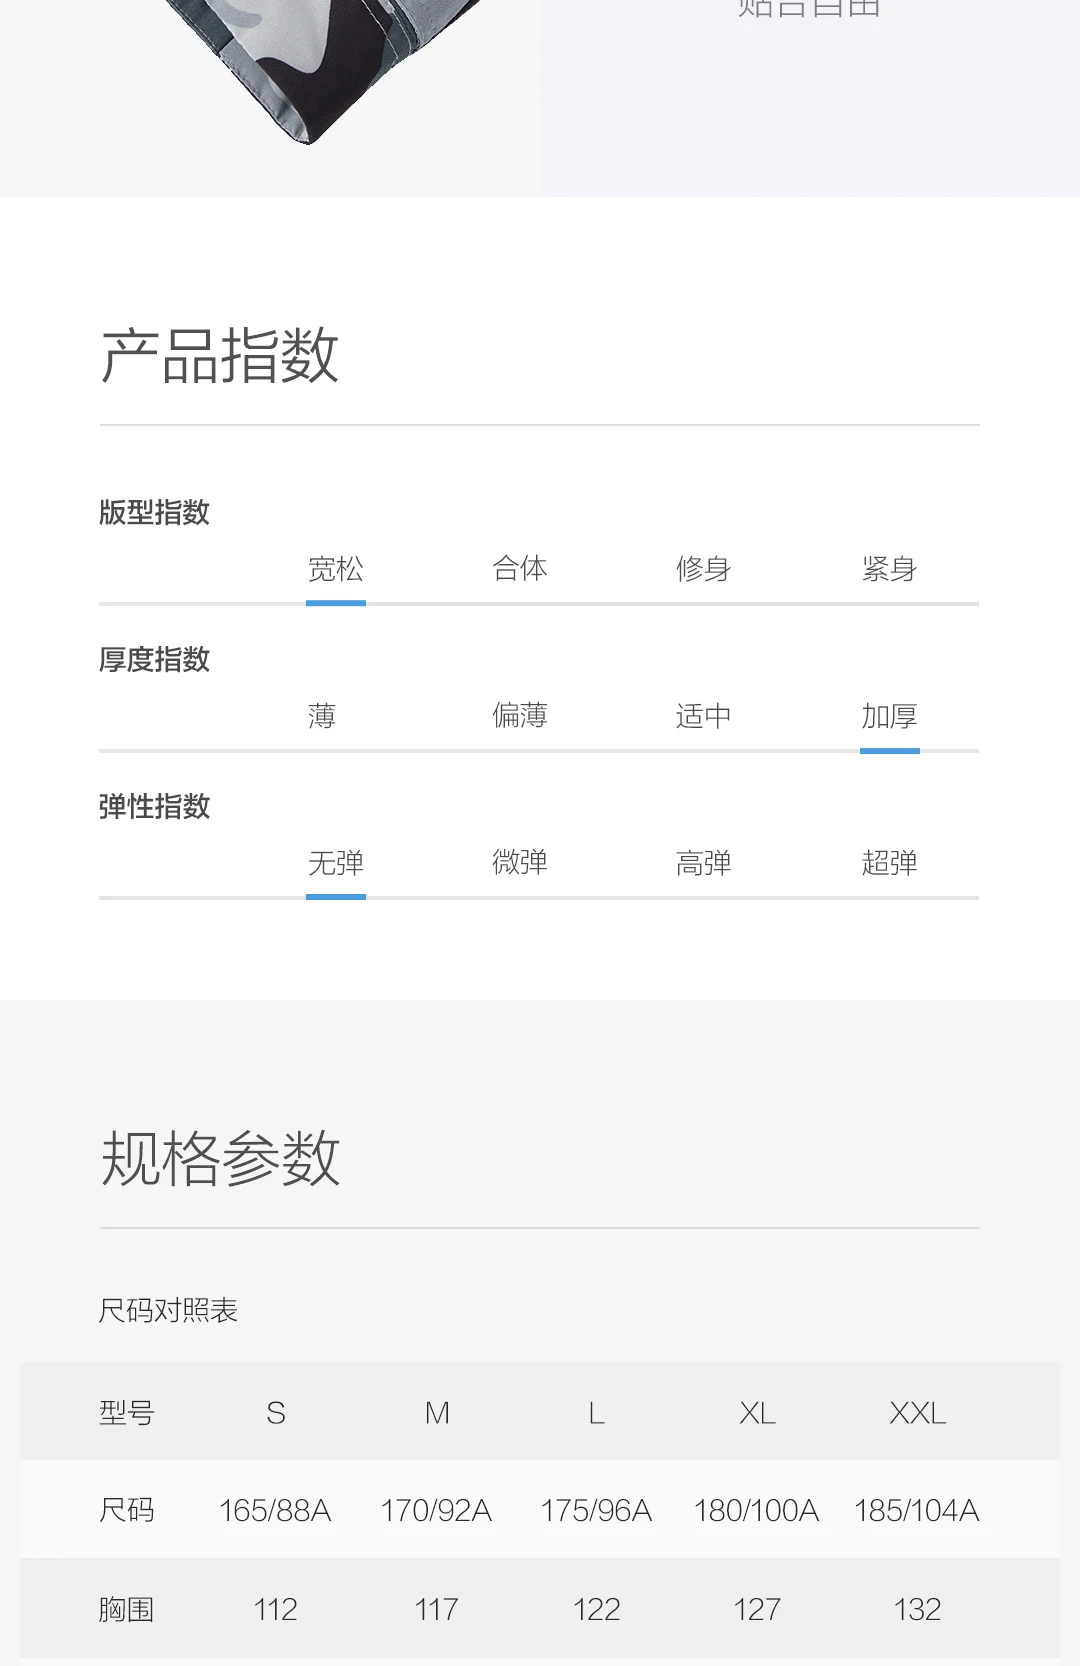 Xiaomi Mijia Youpin MITOWNLIFE Зимний пуховик 90 утиный пух четыре уровня водоотталкивающий тренд камуфляж